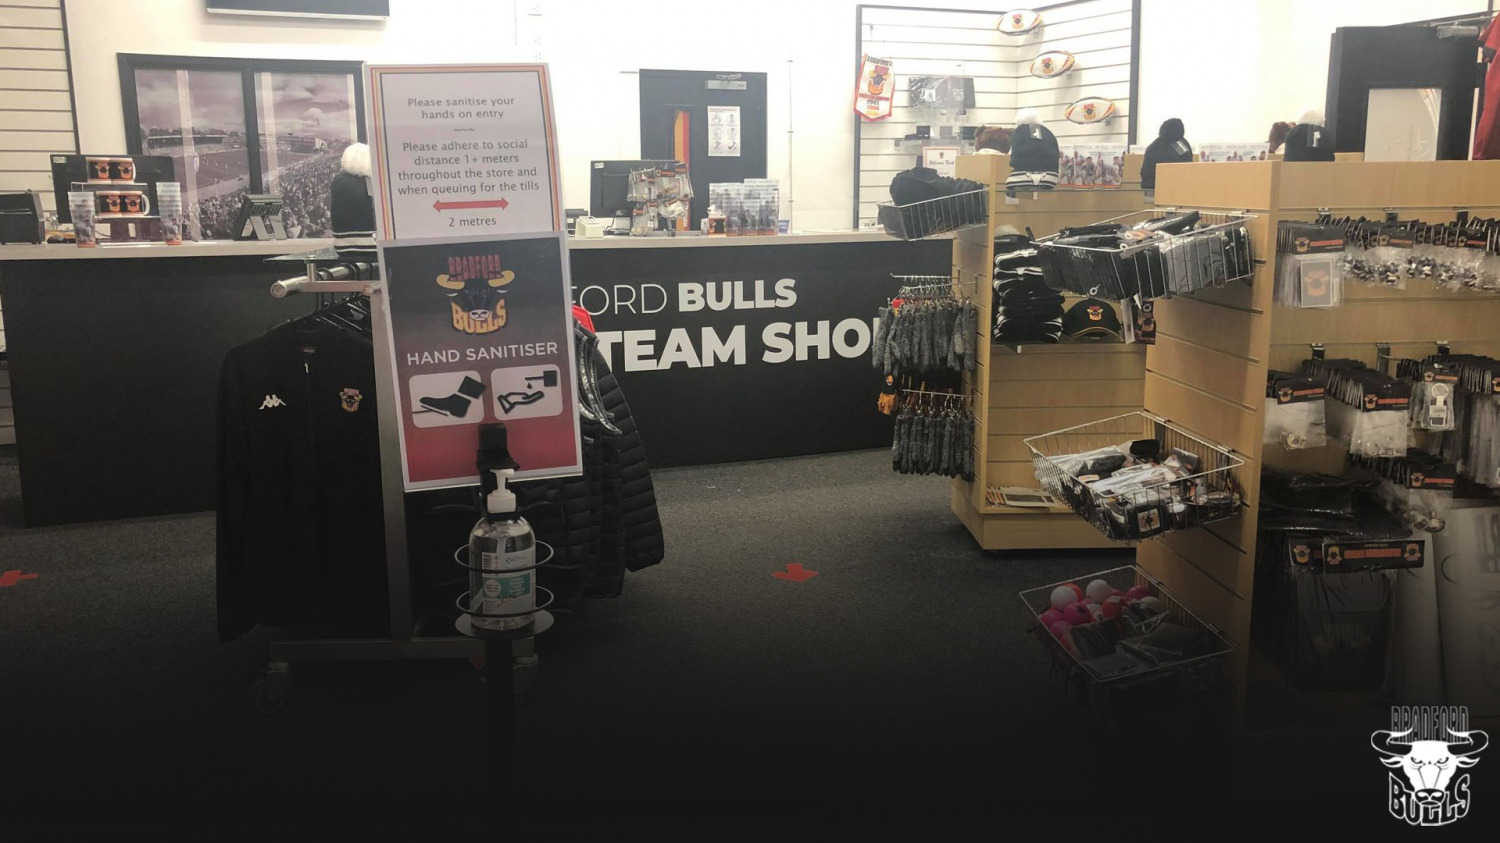 The Bulls Shop